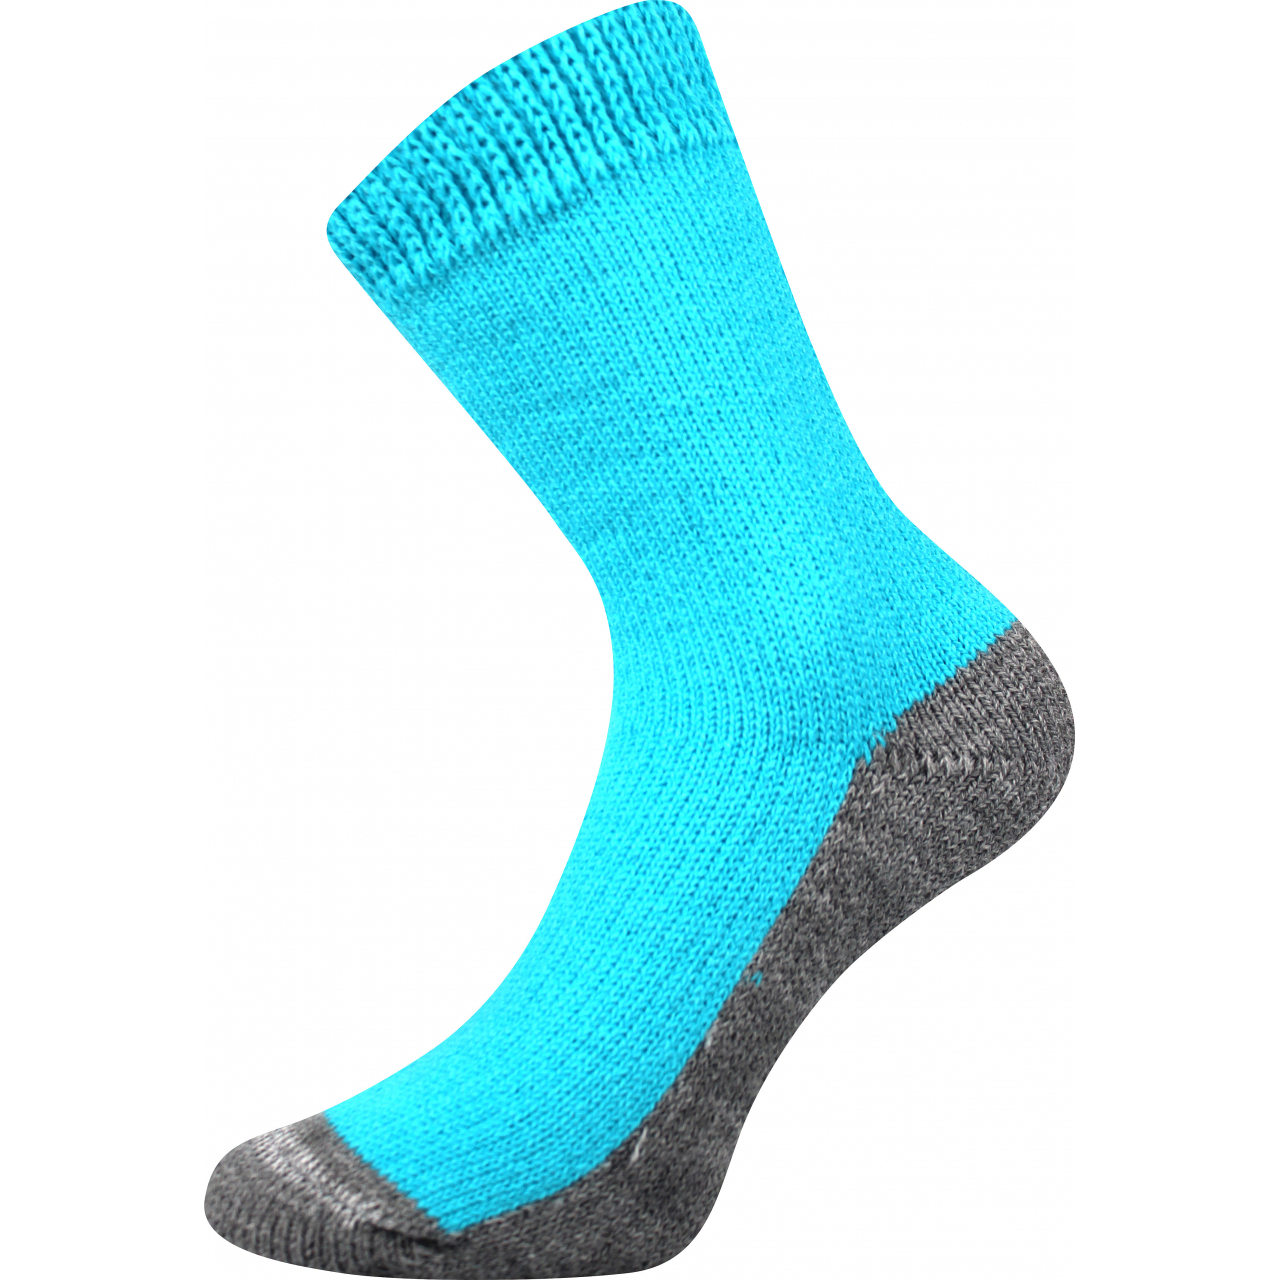 Ponožky unisex Boma Spací - tyrkysové, 39-42